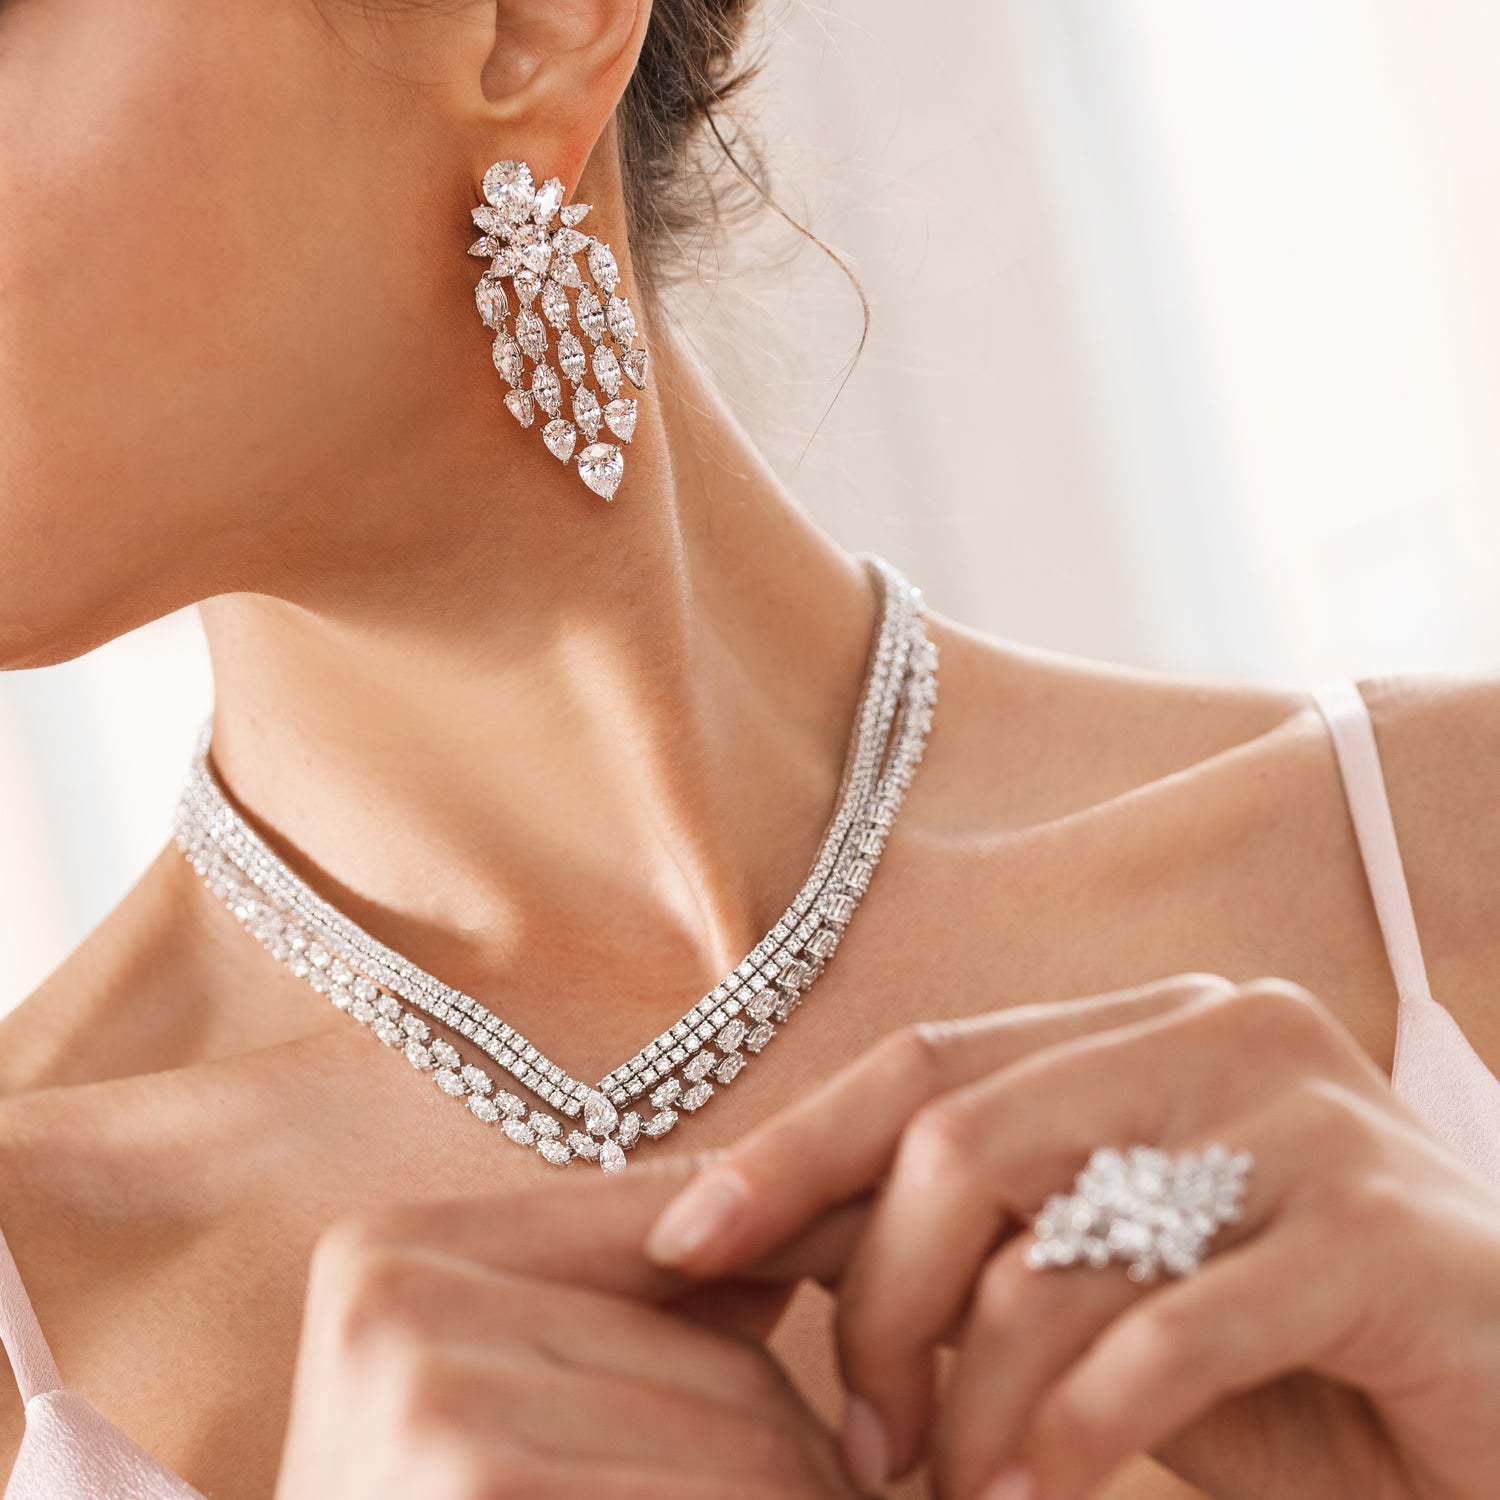 Lyra Necklace Small – CIRO jewelry